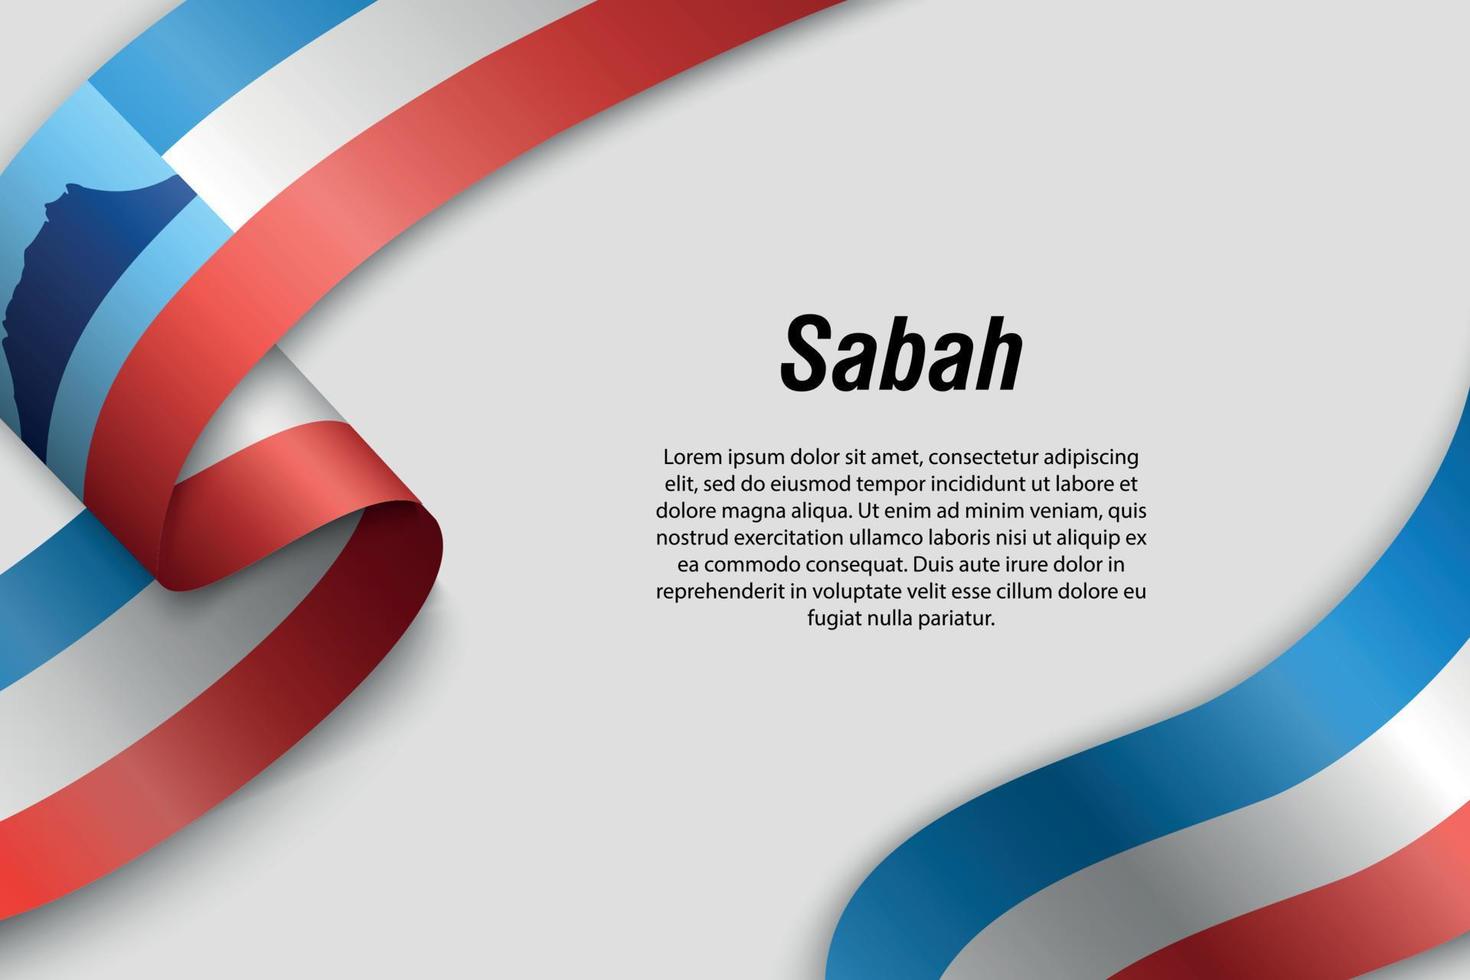 viftande band eller banderoll med flaggstaten Malaysia vektor